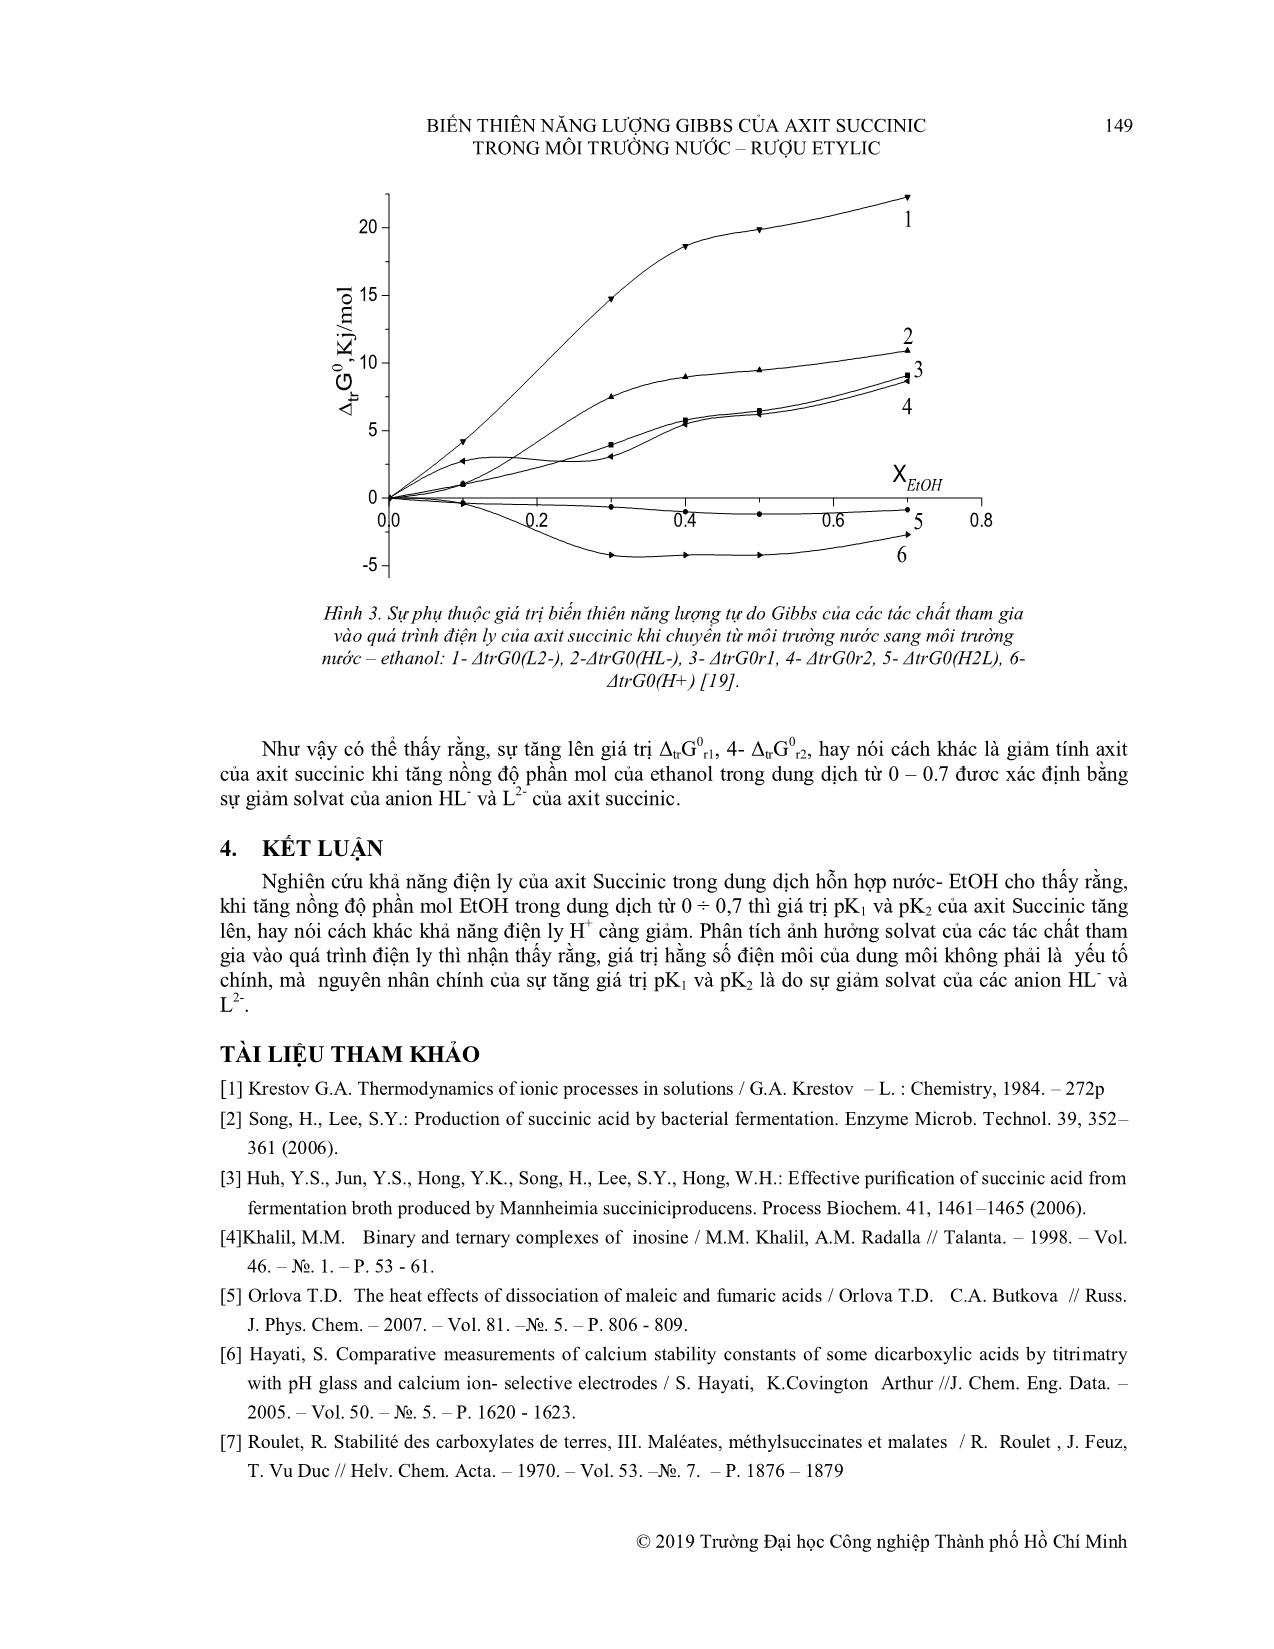 Biến thiên năng lượng gibbs của axit succinic trong môi trường nước - rượu etylic trang 6